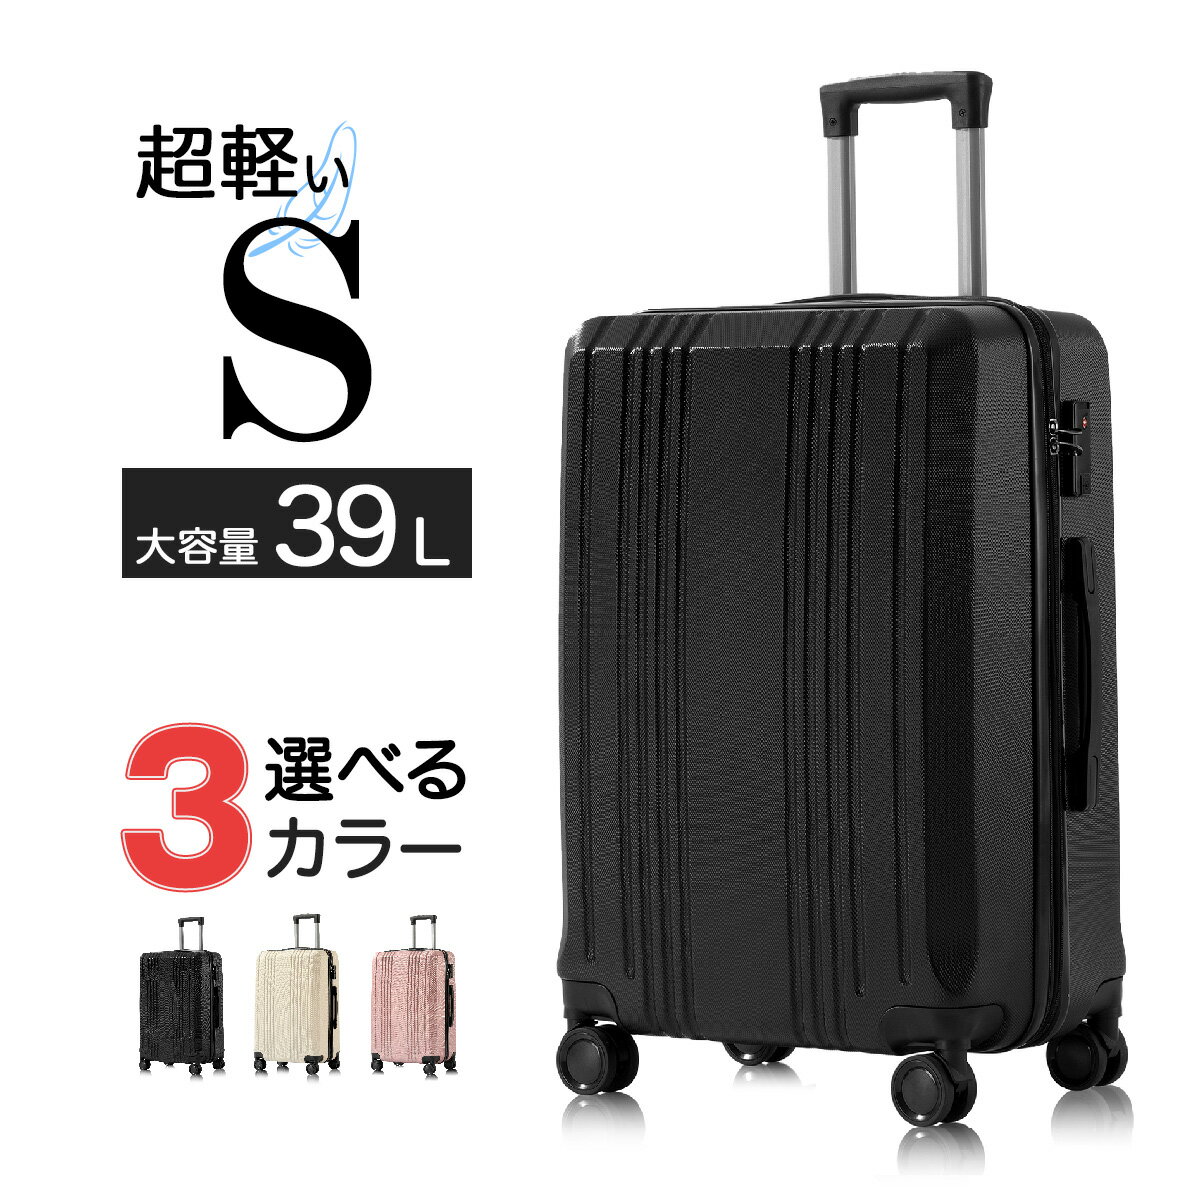  スーツケース キャリーバッグ キャリーケース 旅行カバン 軽量 大型 大容量 ファスナータイプ 静音キャスター